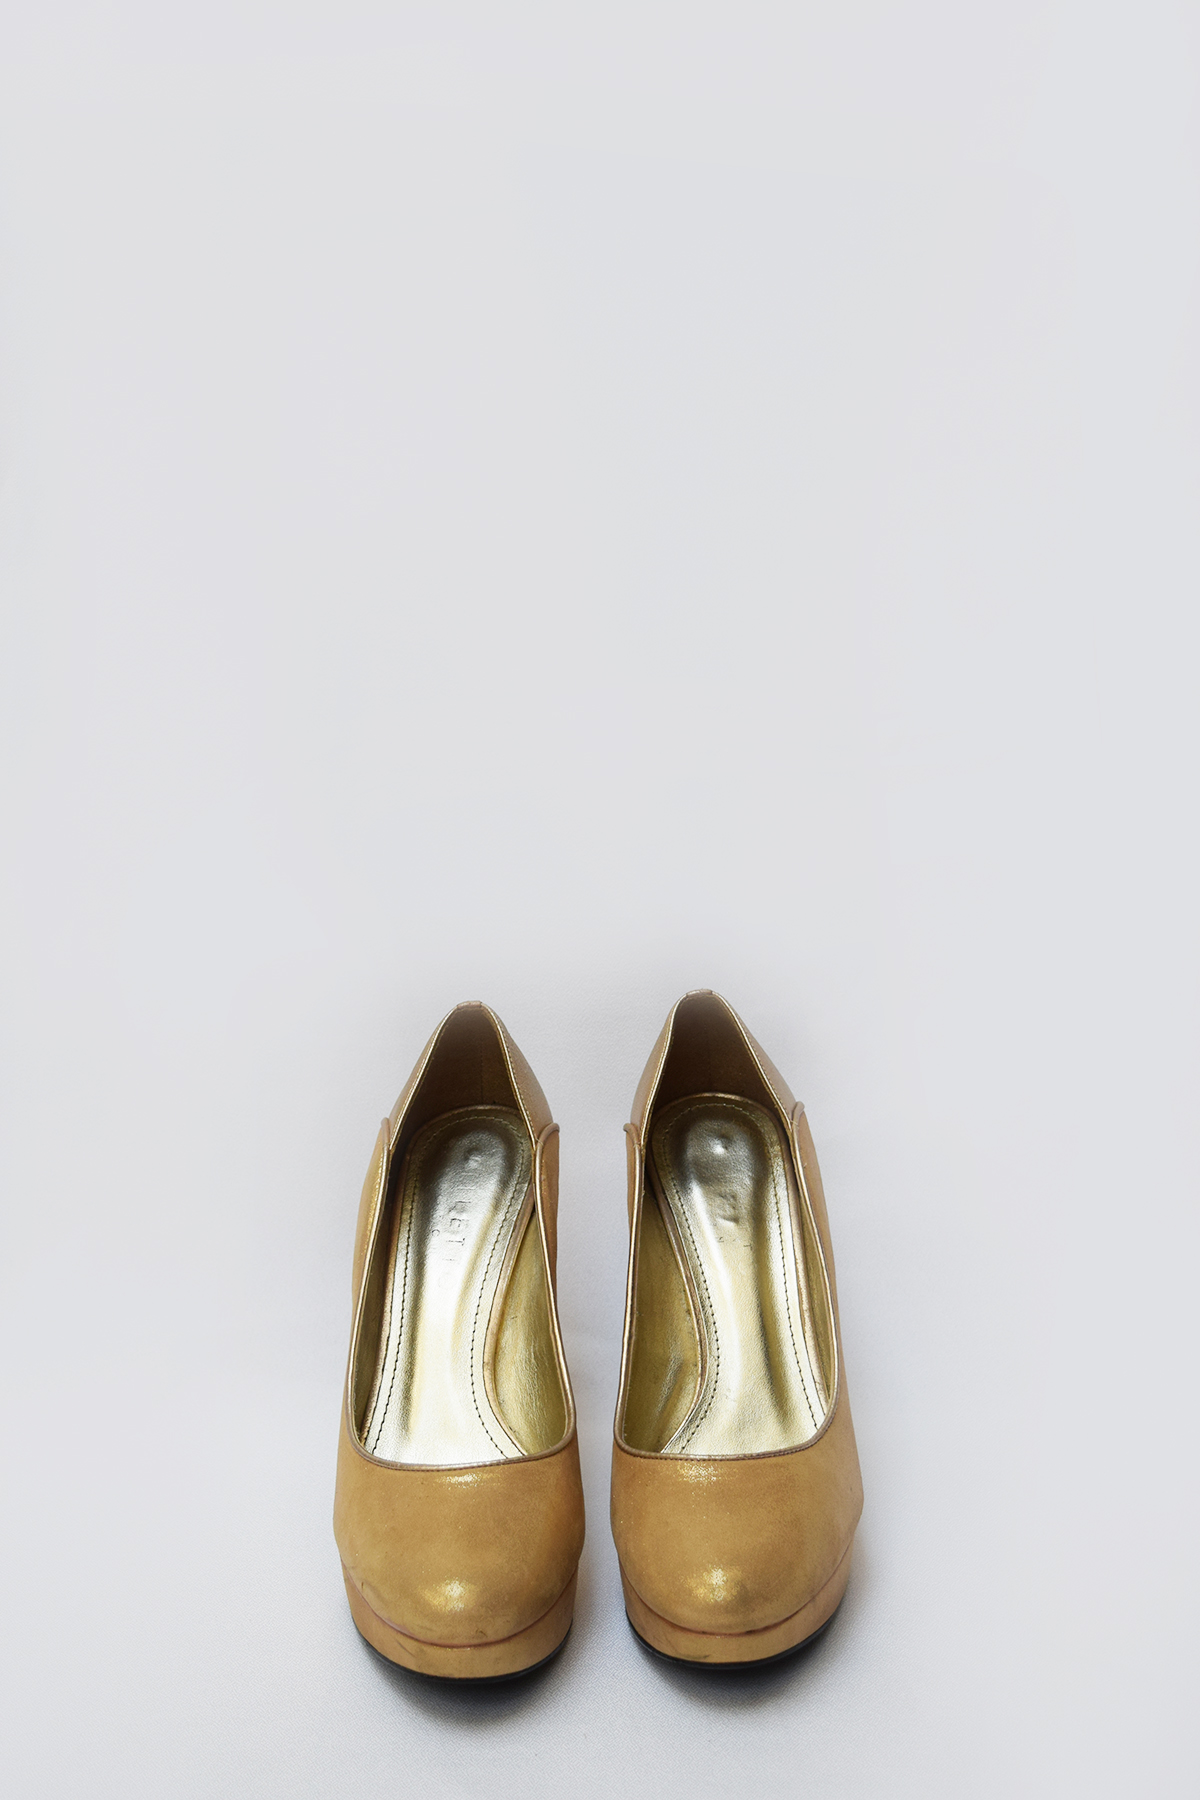 Zapatos cerrados en dos tonos de dorado